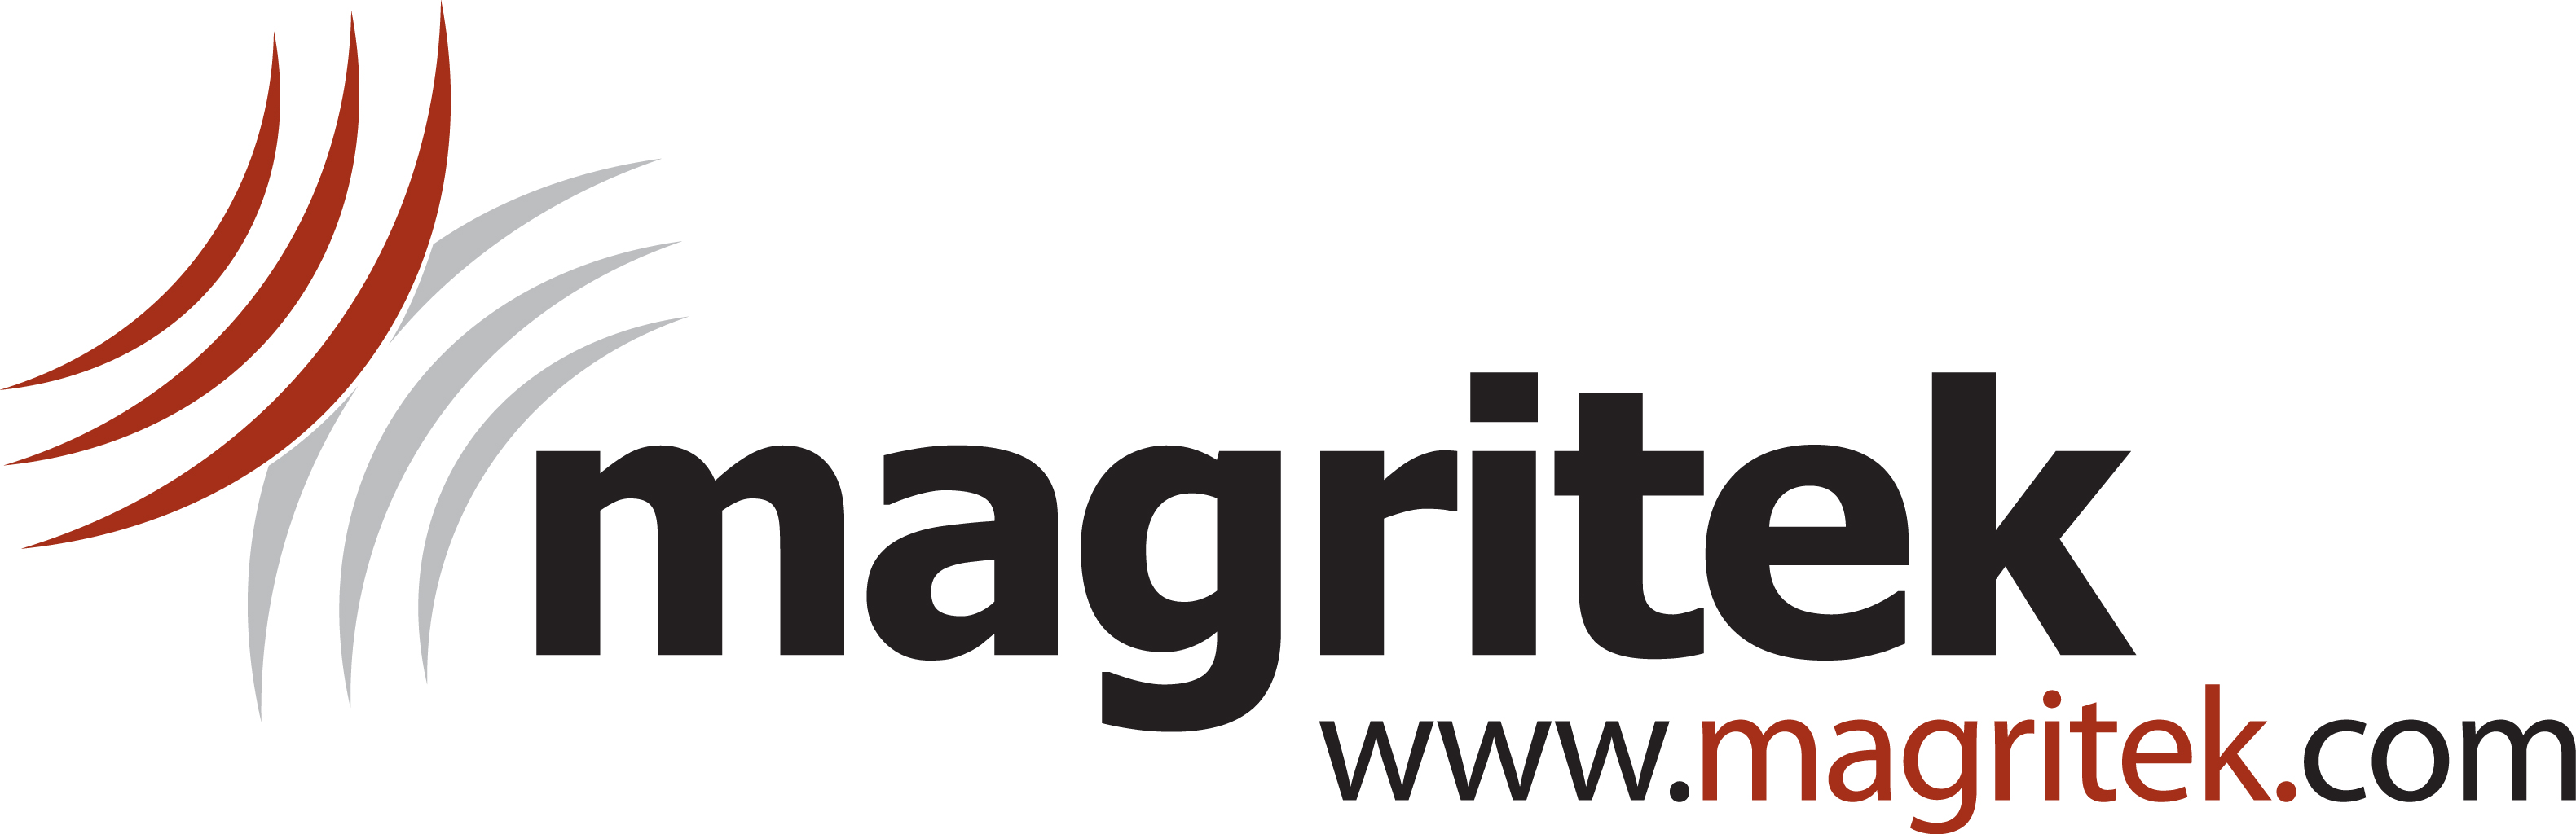 Magritek Logo File.jpg